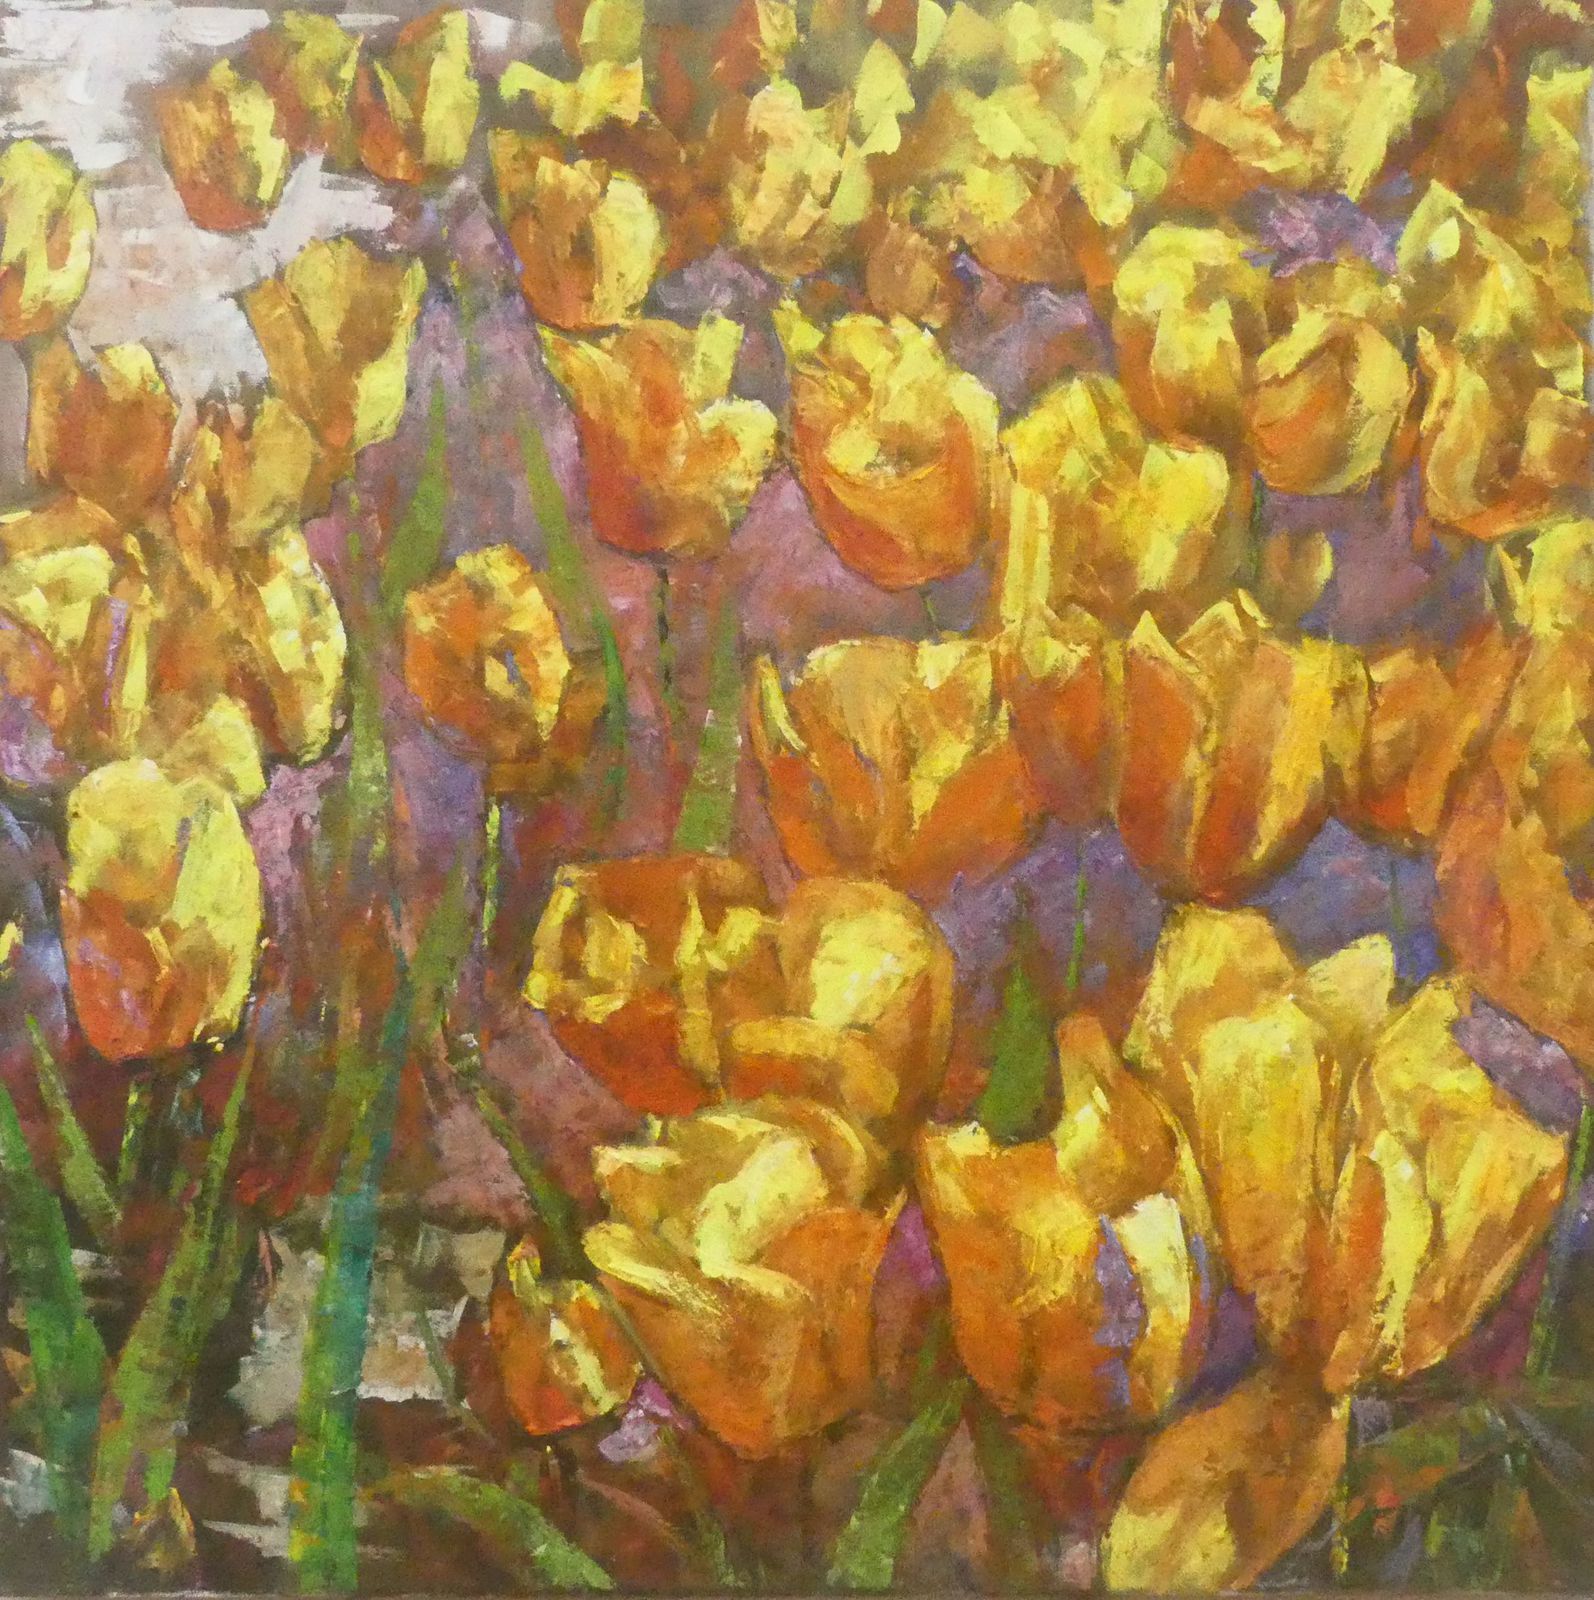 Les tulipes jaunes